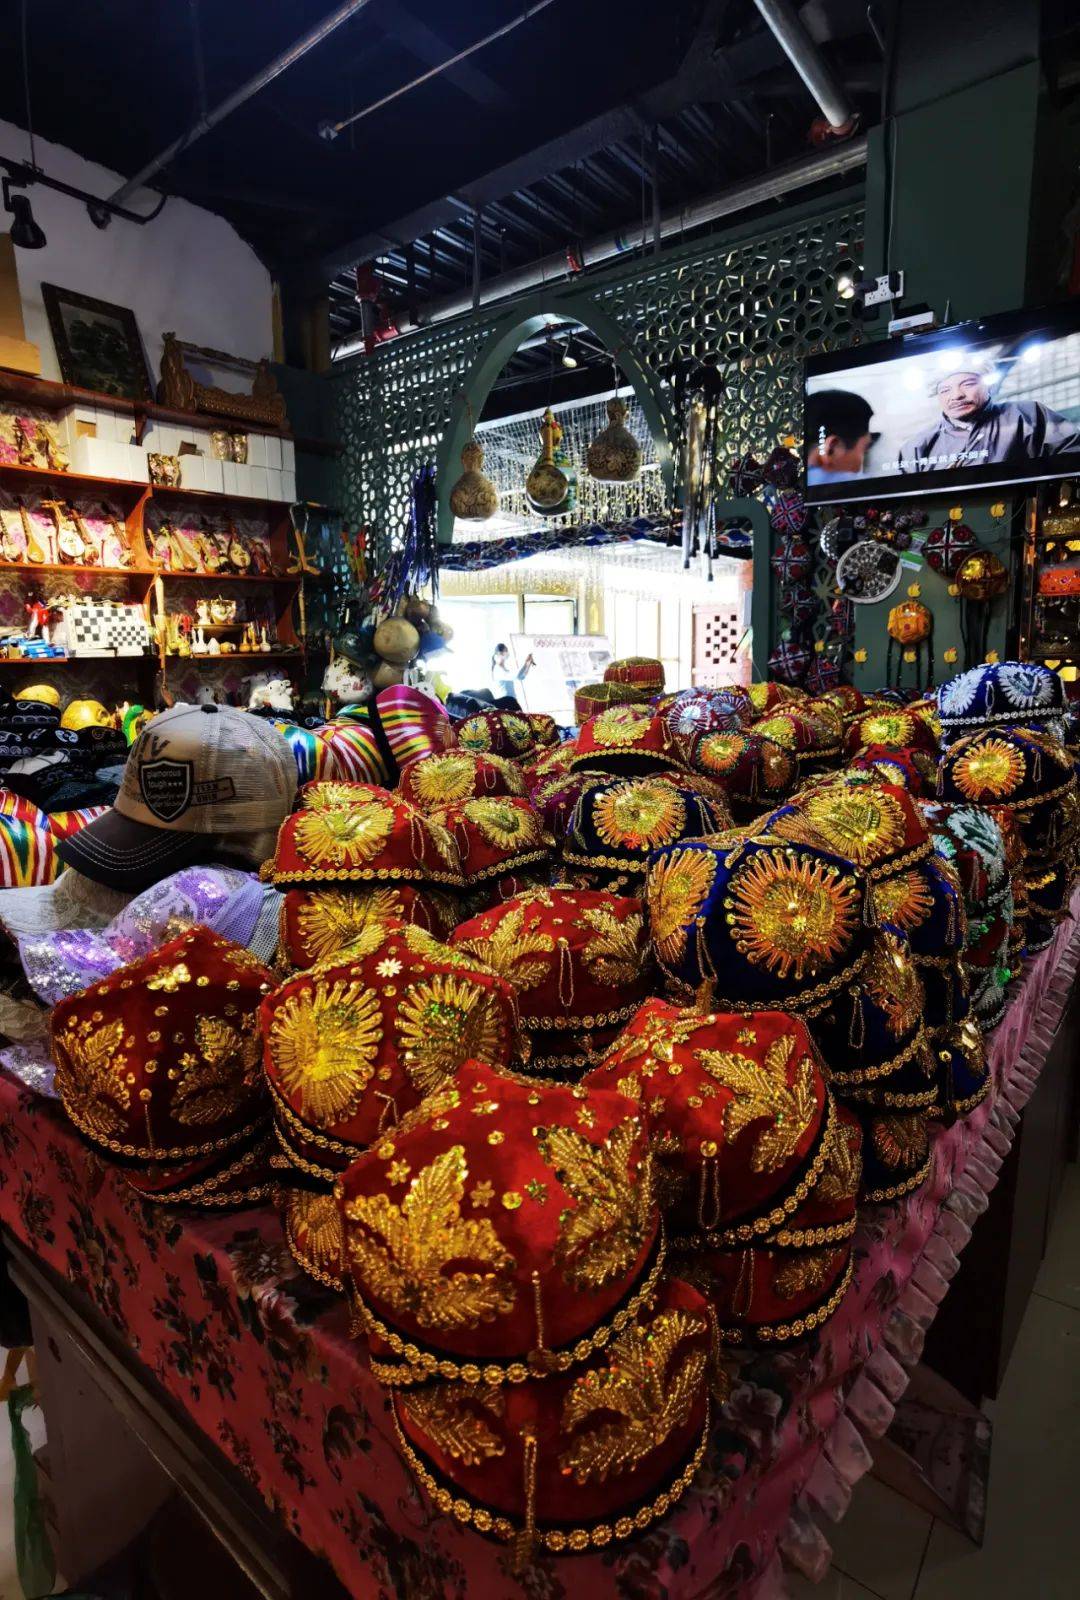 伊宁市汉人街民族特色小店的商品琳琅满目，简直就是一个非物质文化的展览馆